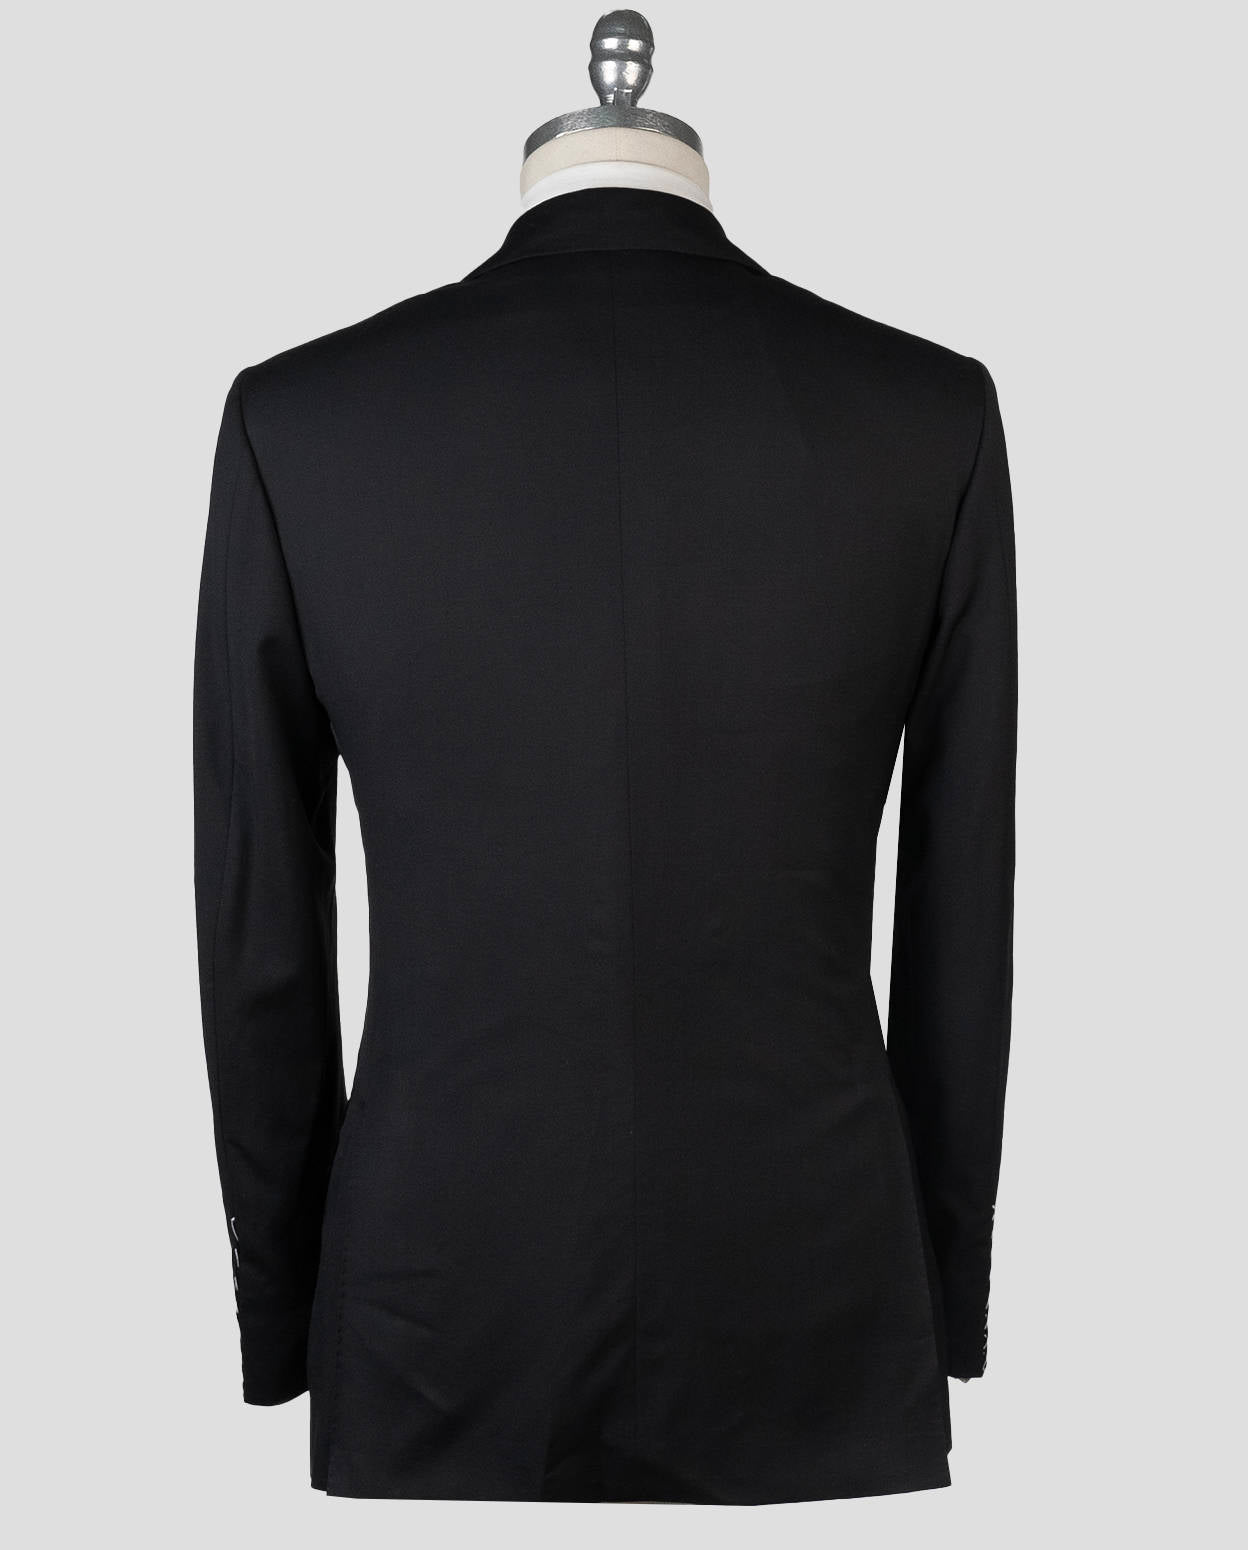 Kiton Black Virgin Wool Suit